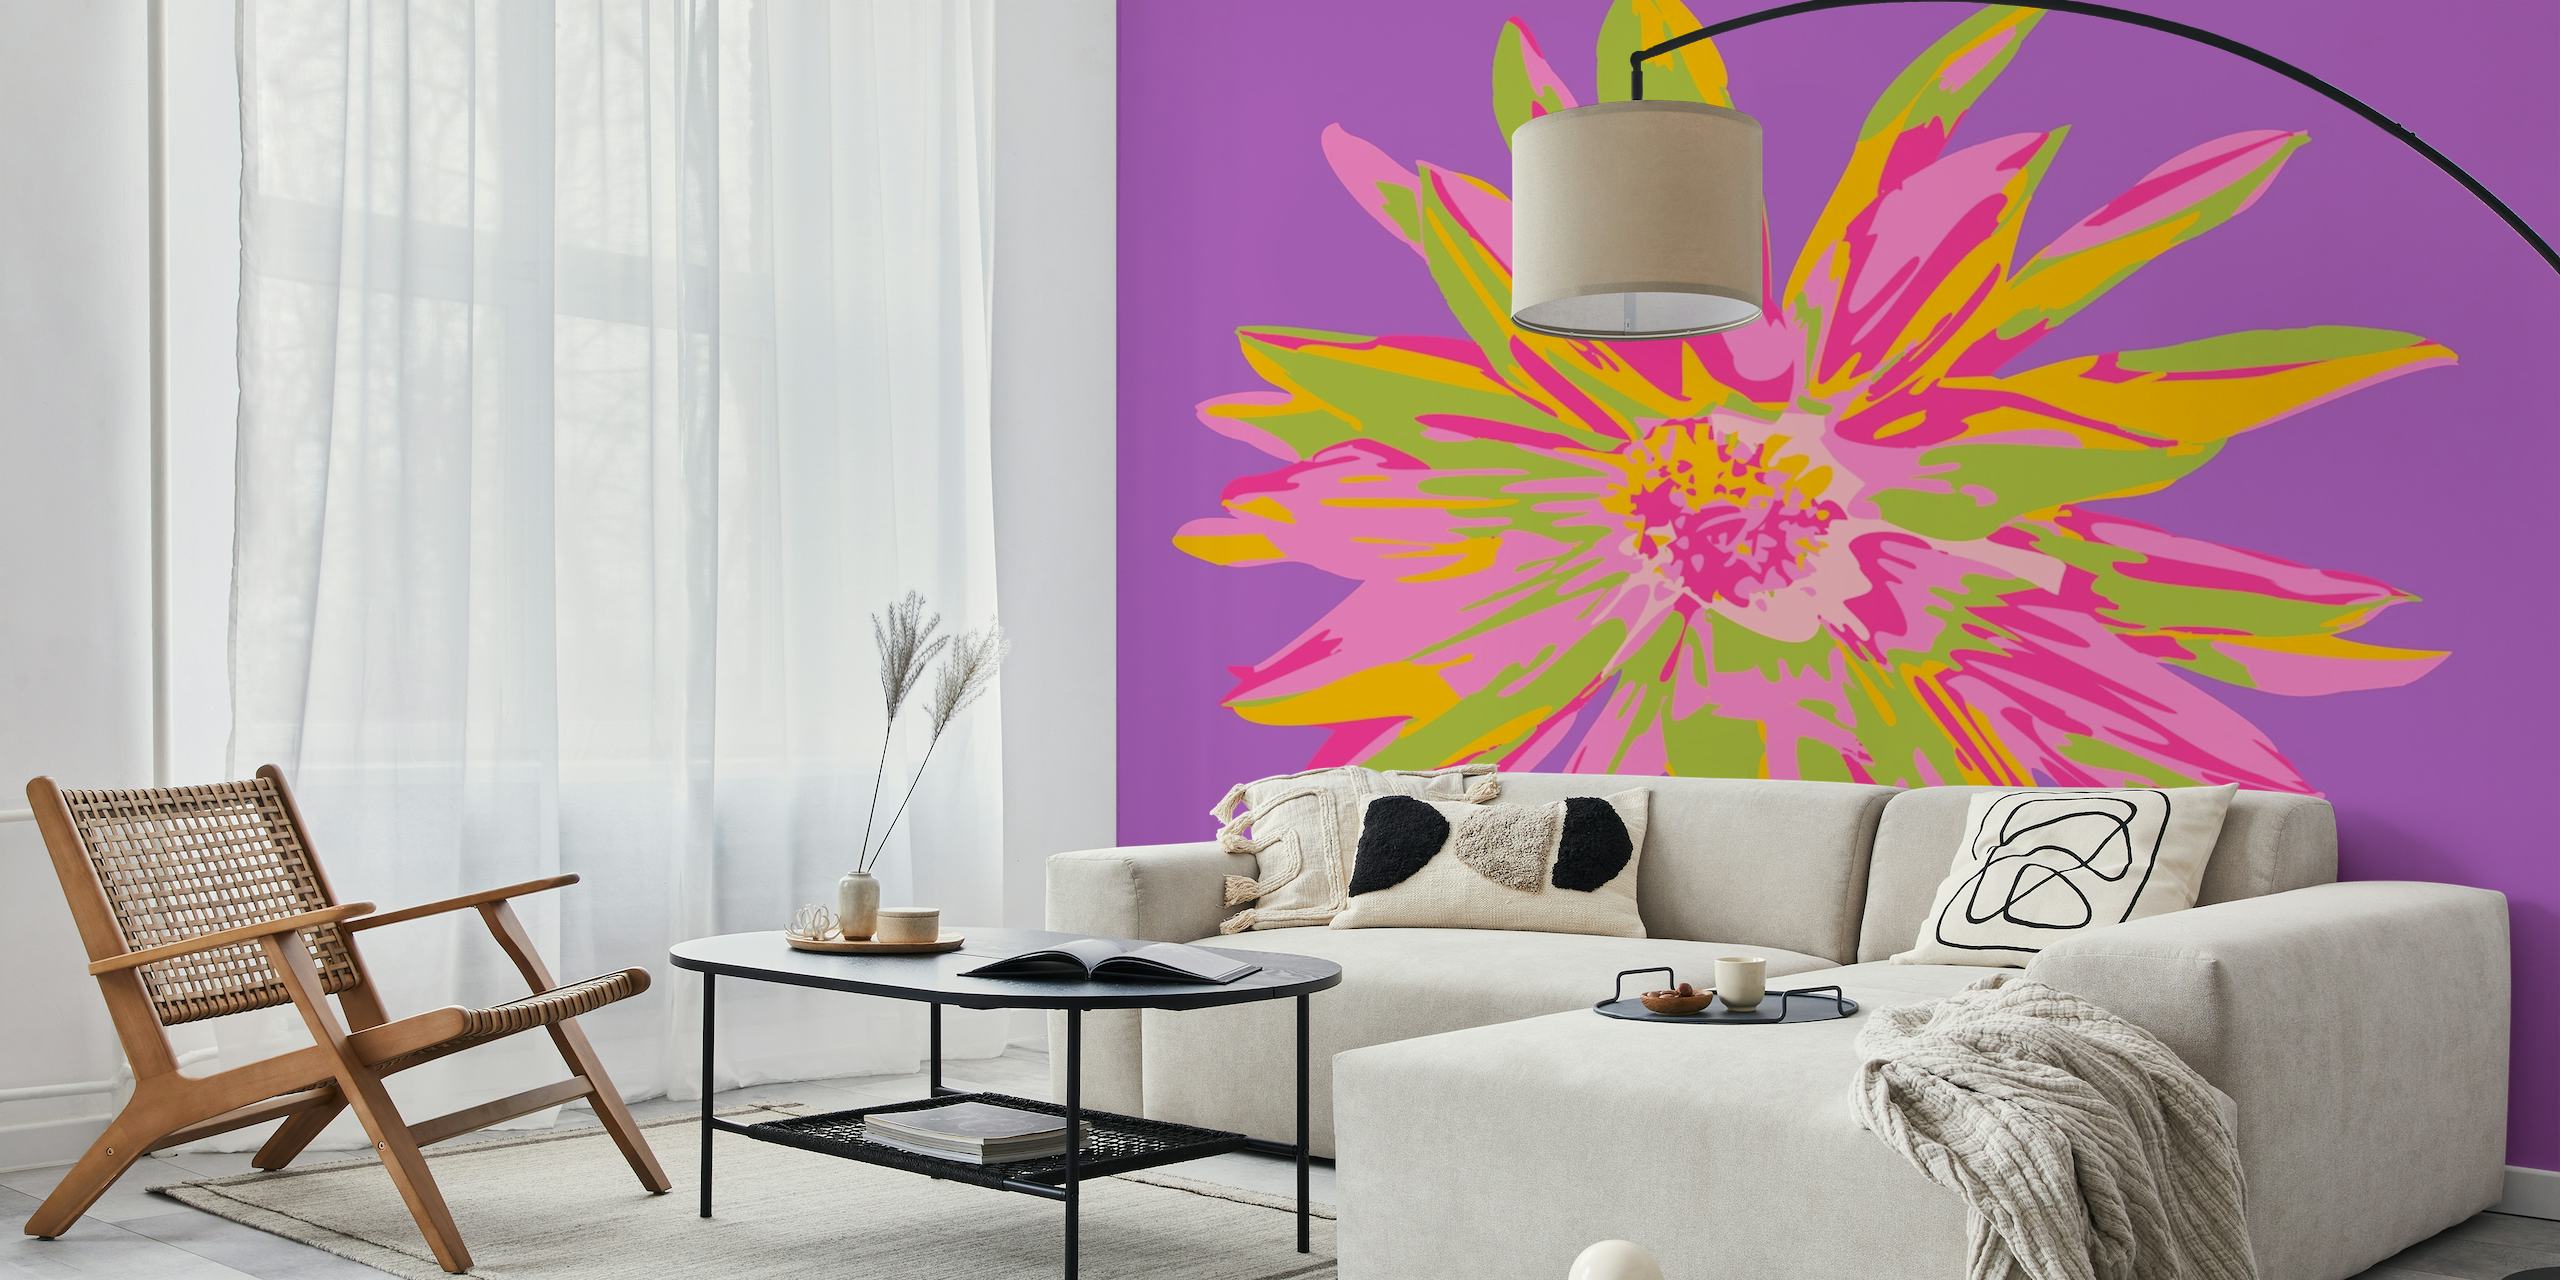 Abstract fotobehang met dahliabloemen in violette, roze en gele tinten op een paarse achtergrond